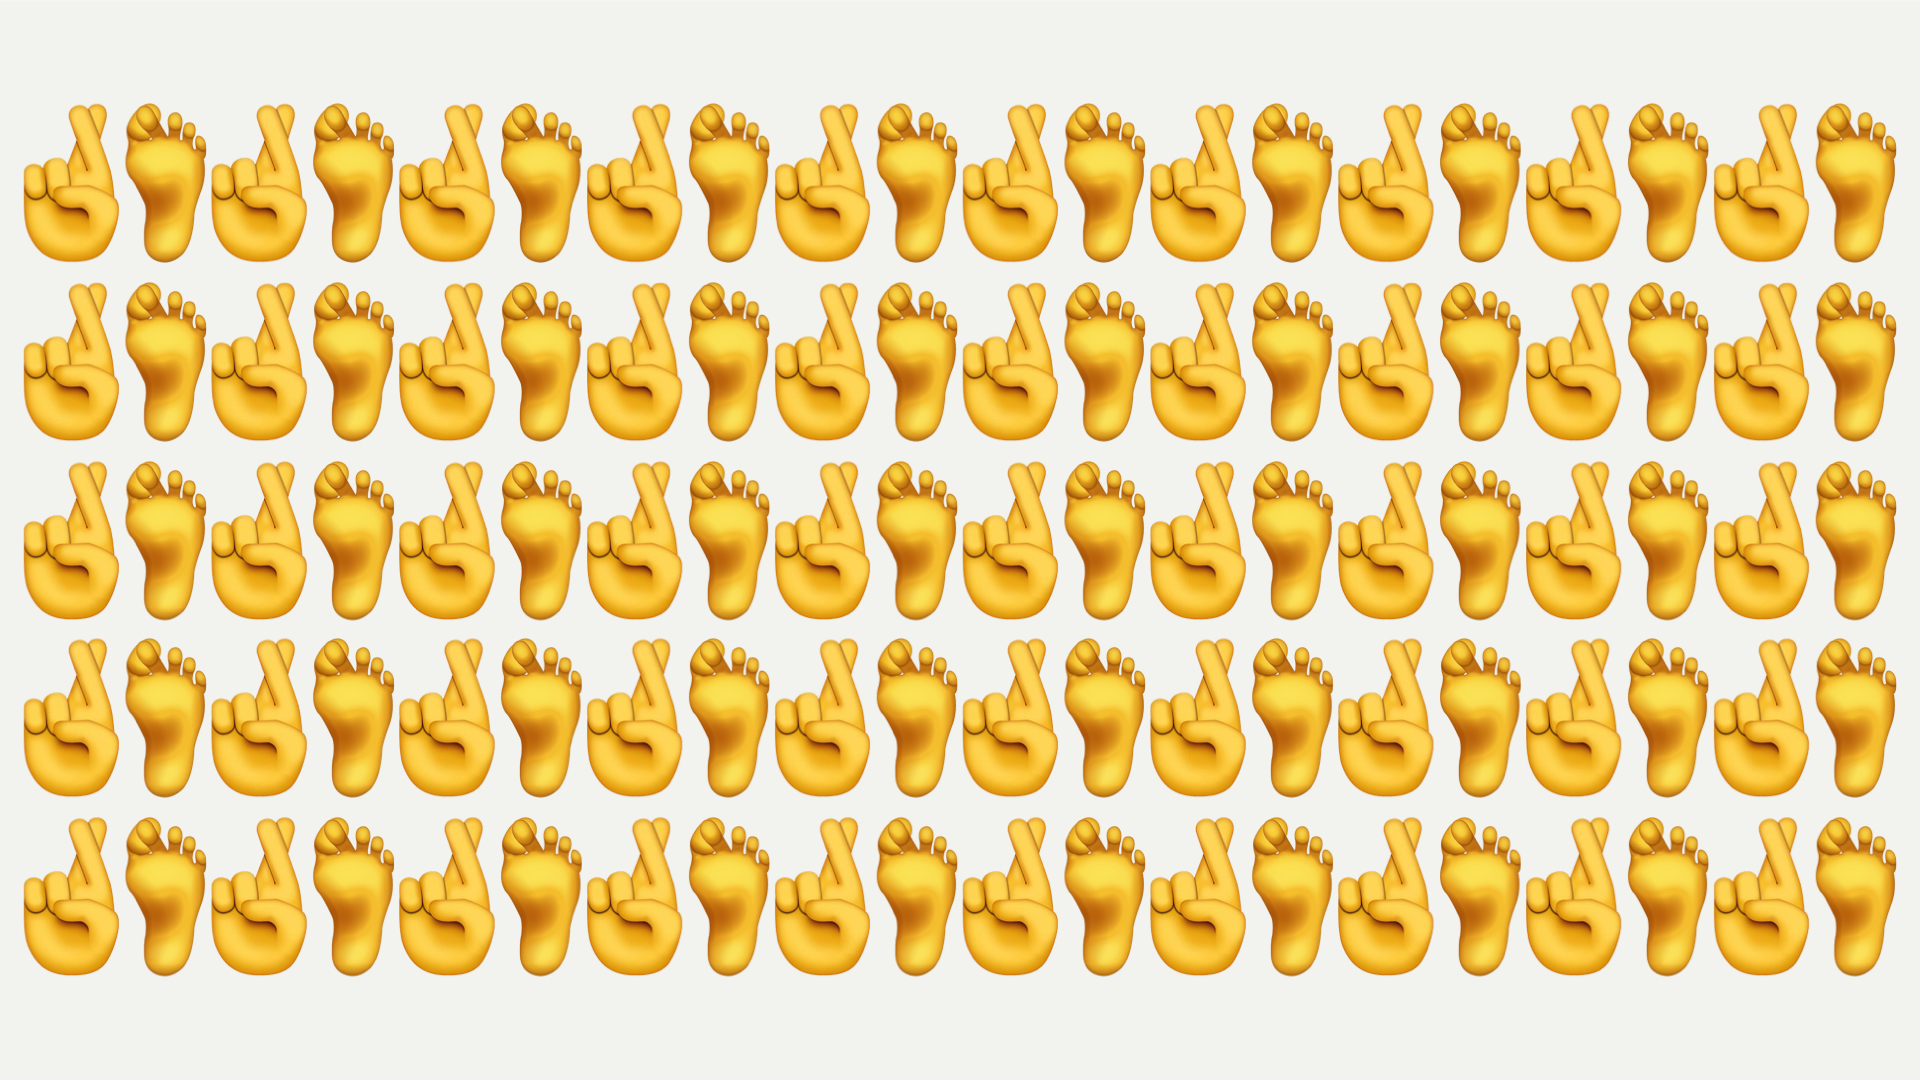 toes-crossed-emoji.002.jpeg